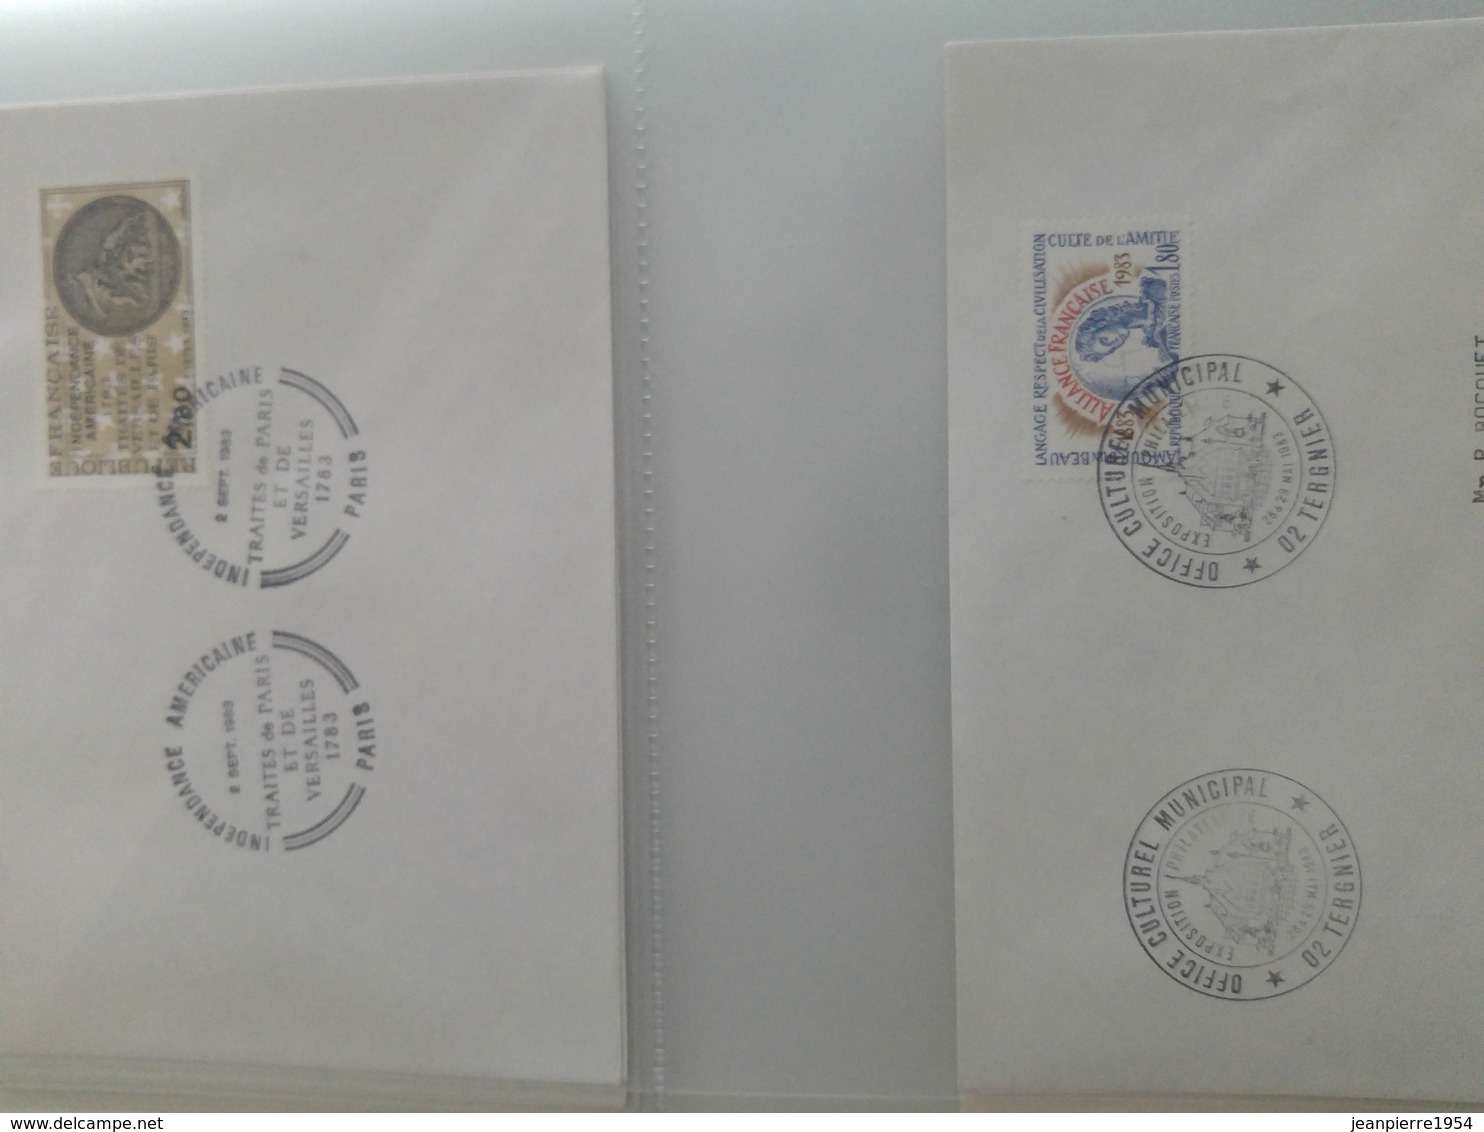 ancien timbres français neuf